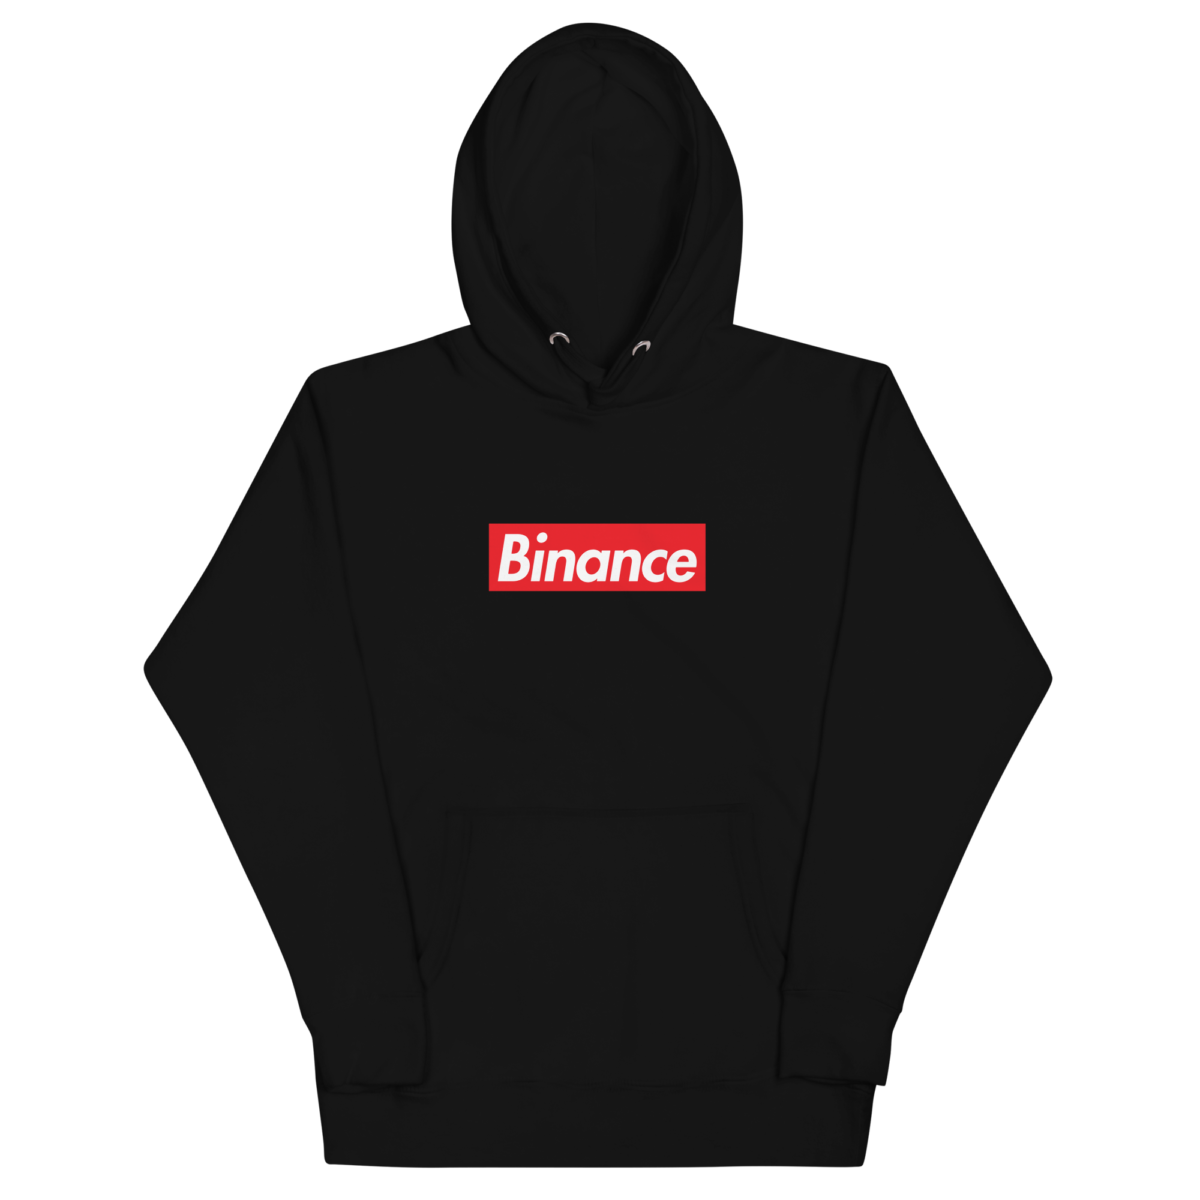 unisex premium hoodie black front 6321f29d4f525 - Binance (RED) Hoodie